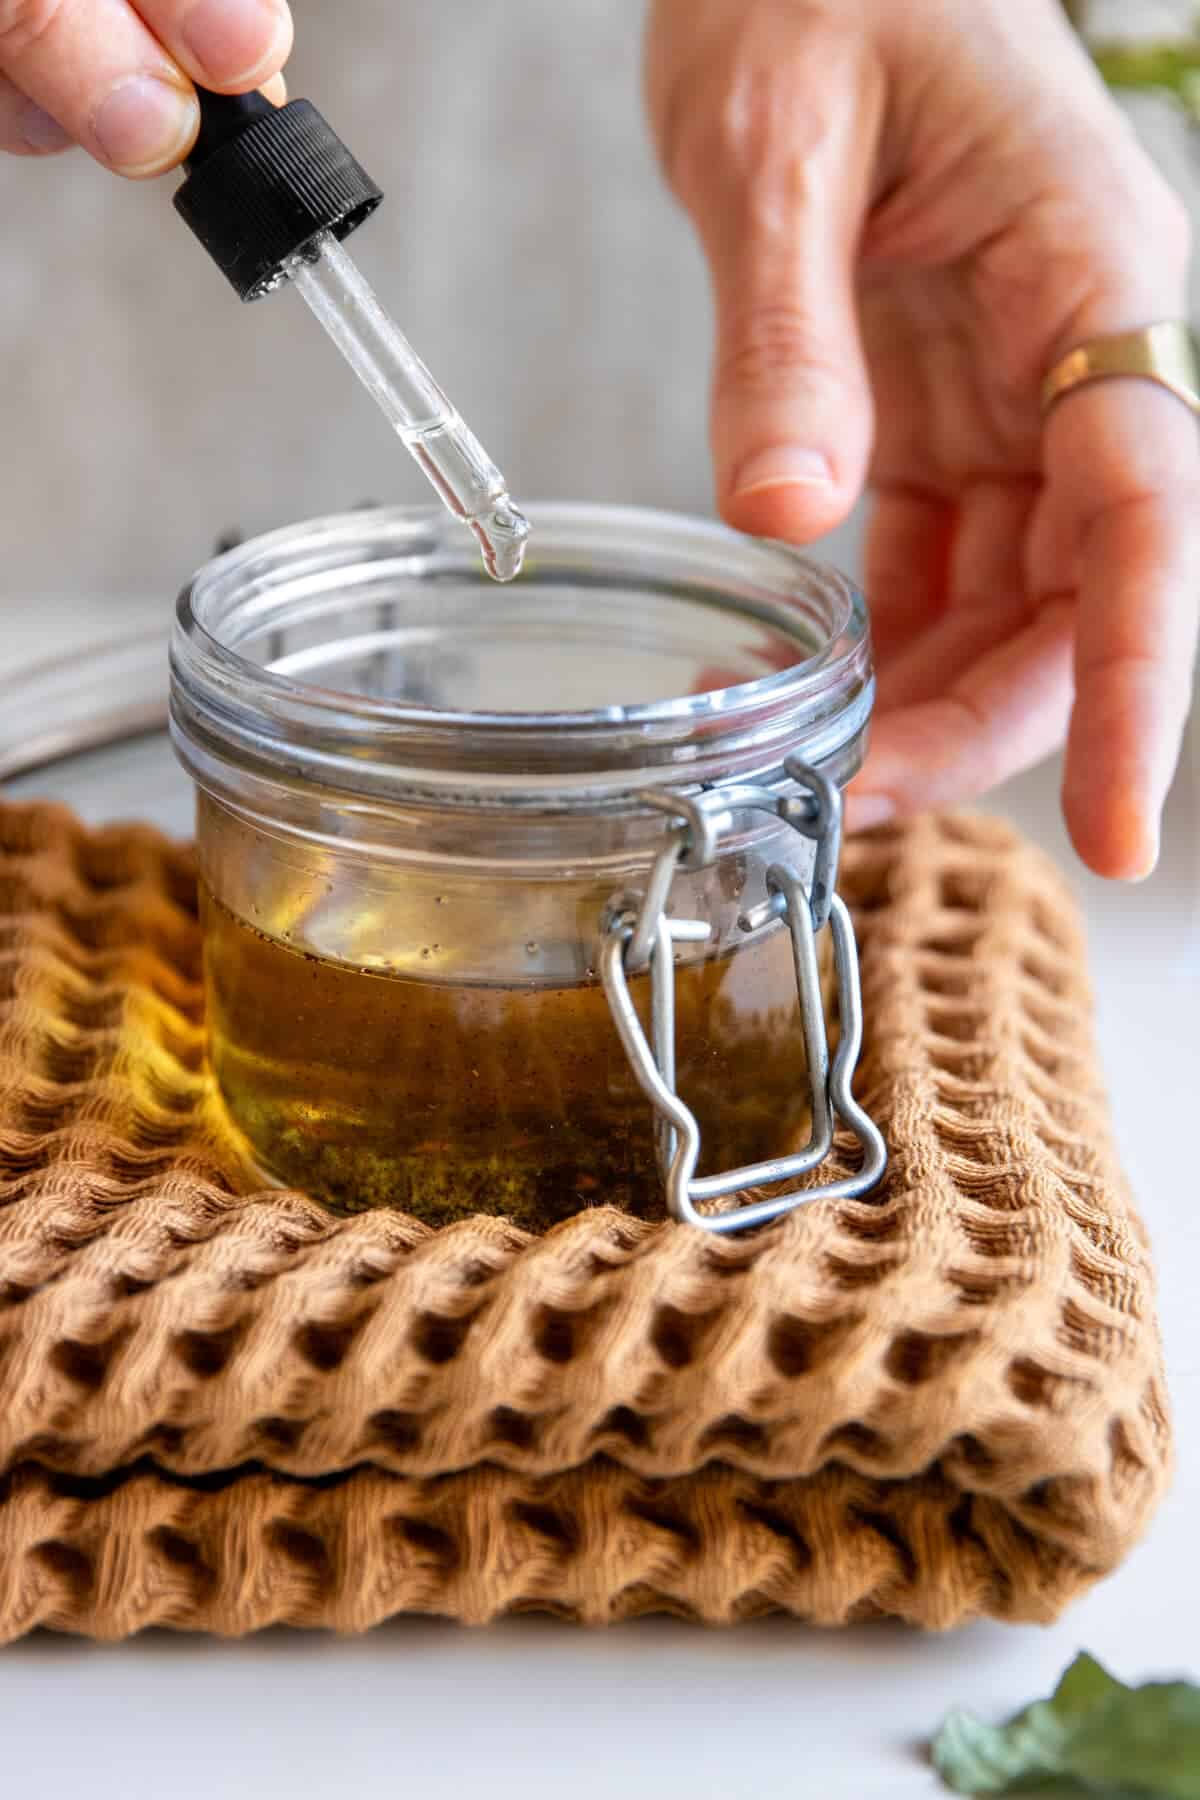 Add essential oils to DIY vanilla perfume